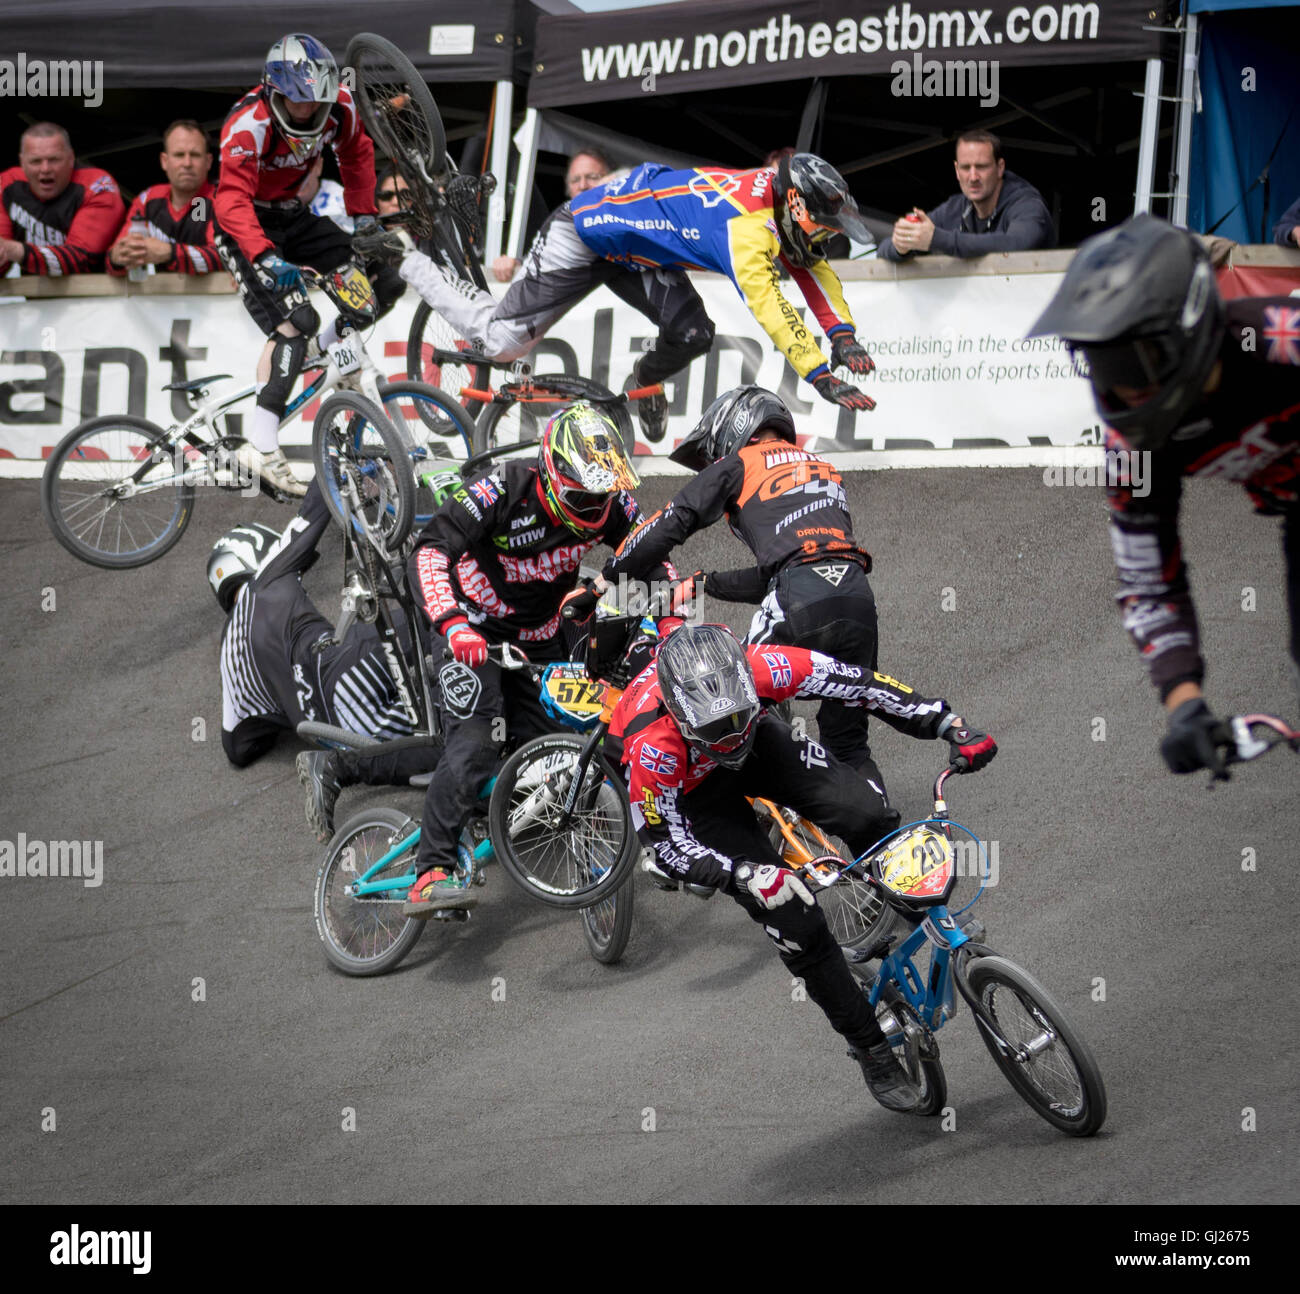 A spectacular crash during a BMX Race Stock Photo - Alamy